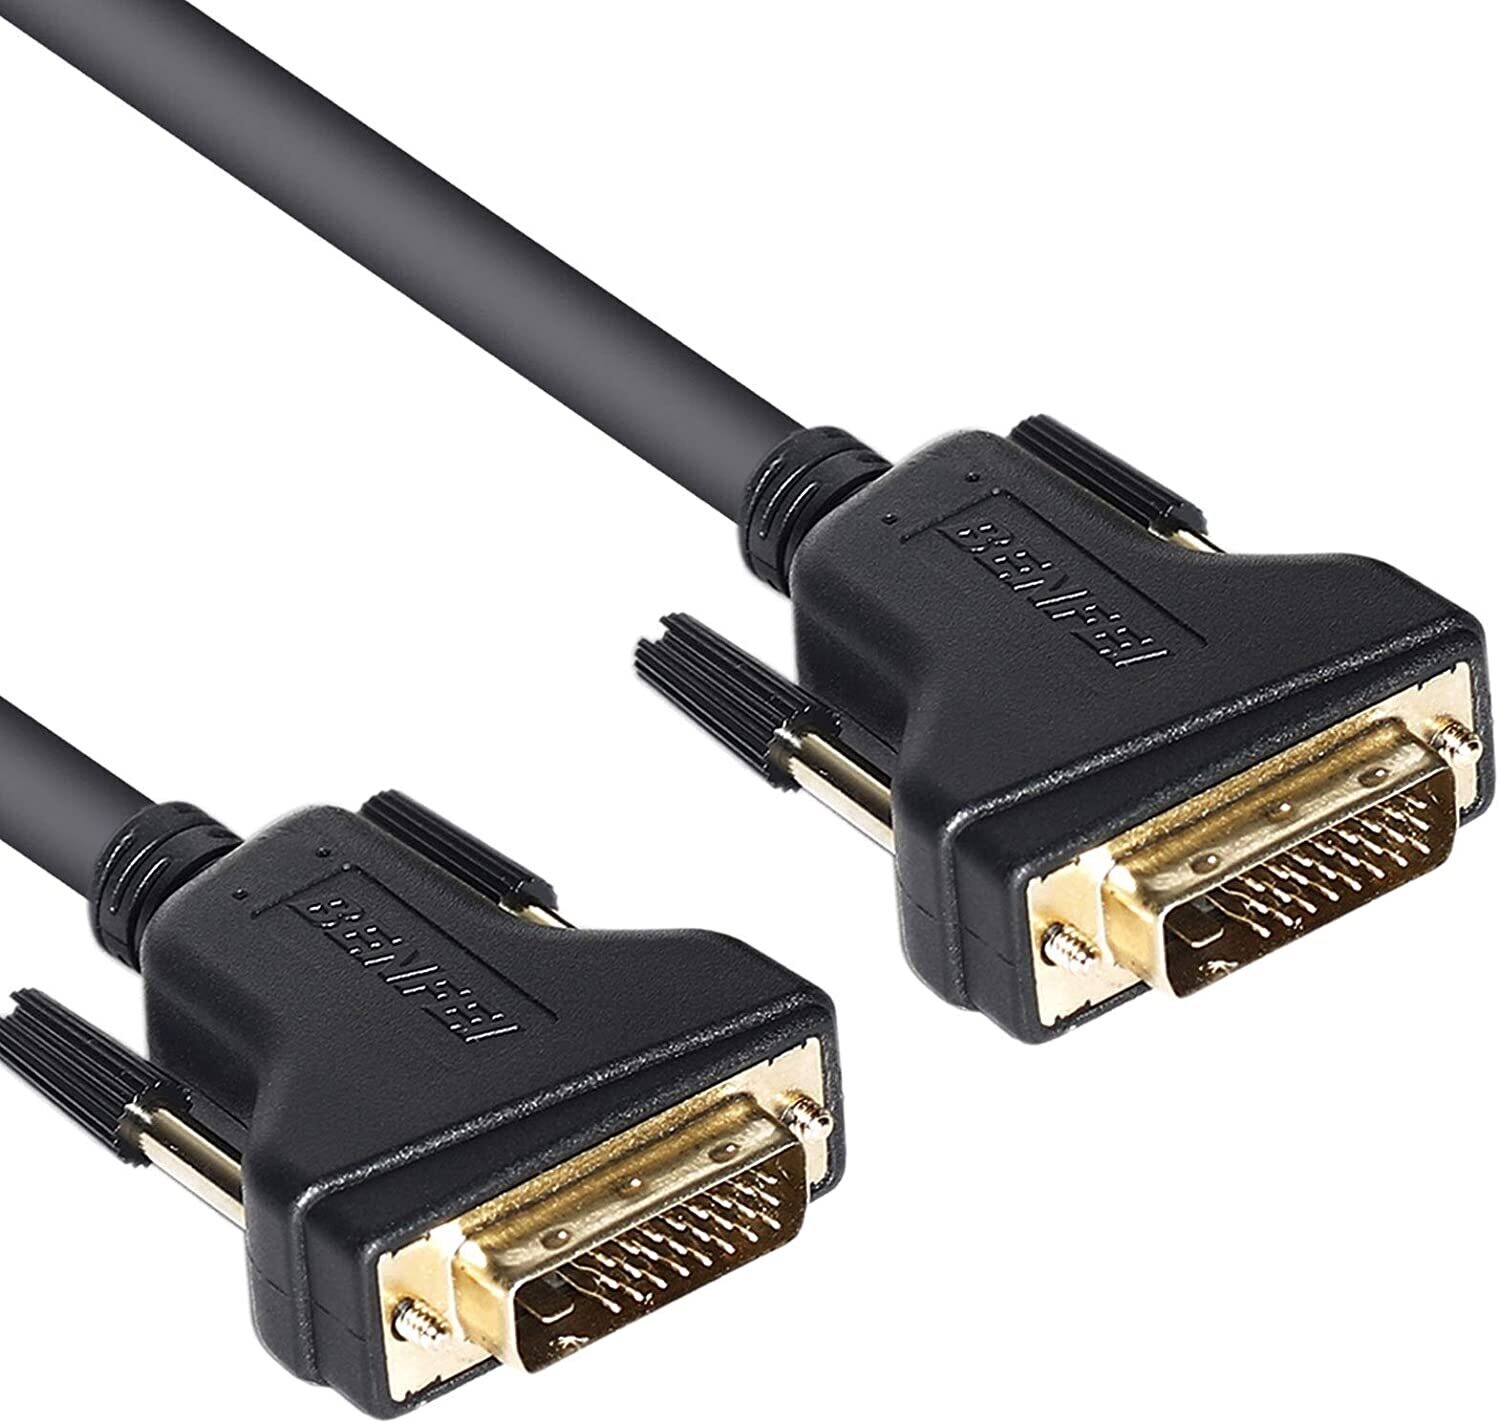 Cable - AVC 5000 DVI-D (M)->DVI-D (M)